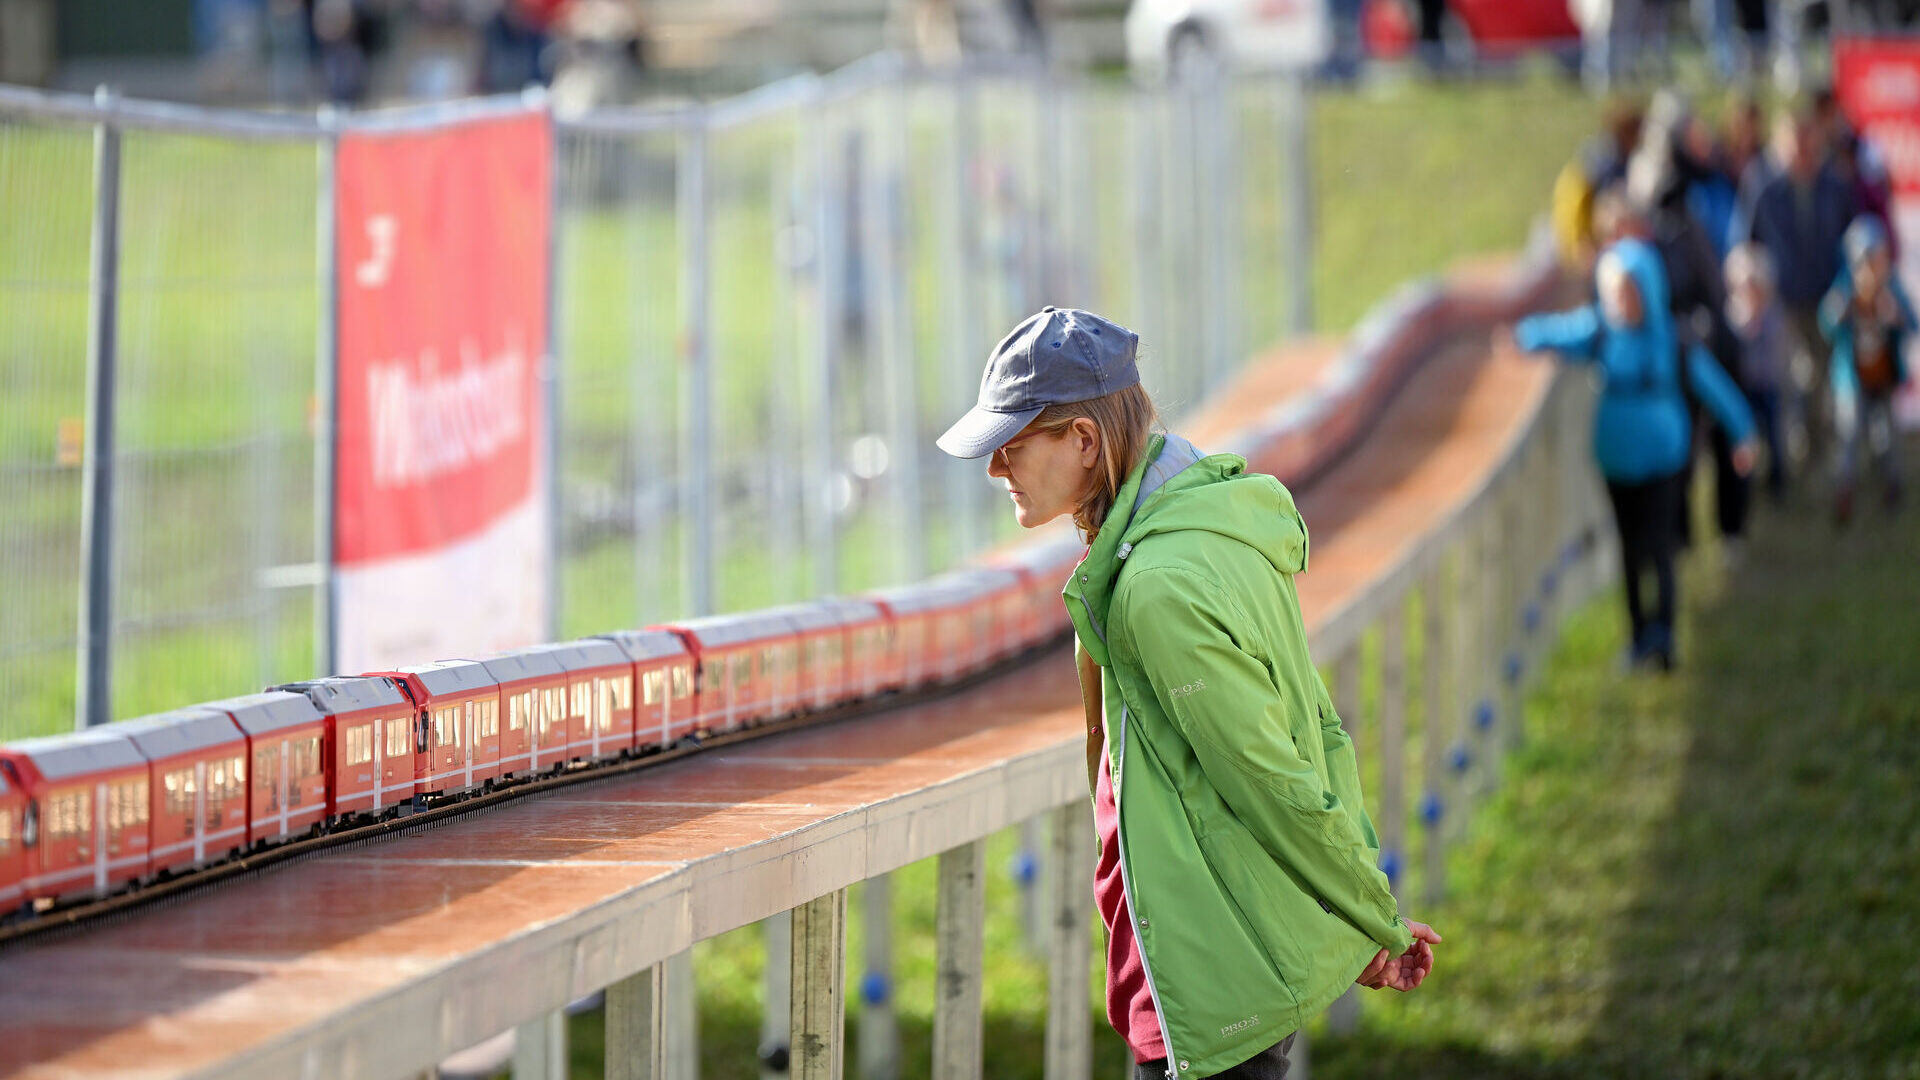 रेटियन रेलवे की दुनिया की सबसे लंबी नैरो-गेज ट्रेन के रिकॉर्ड के दौरान ग्रुबुन्डेन जनता के लिए गतिविधियाँ